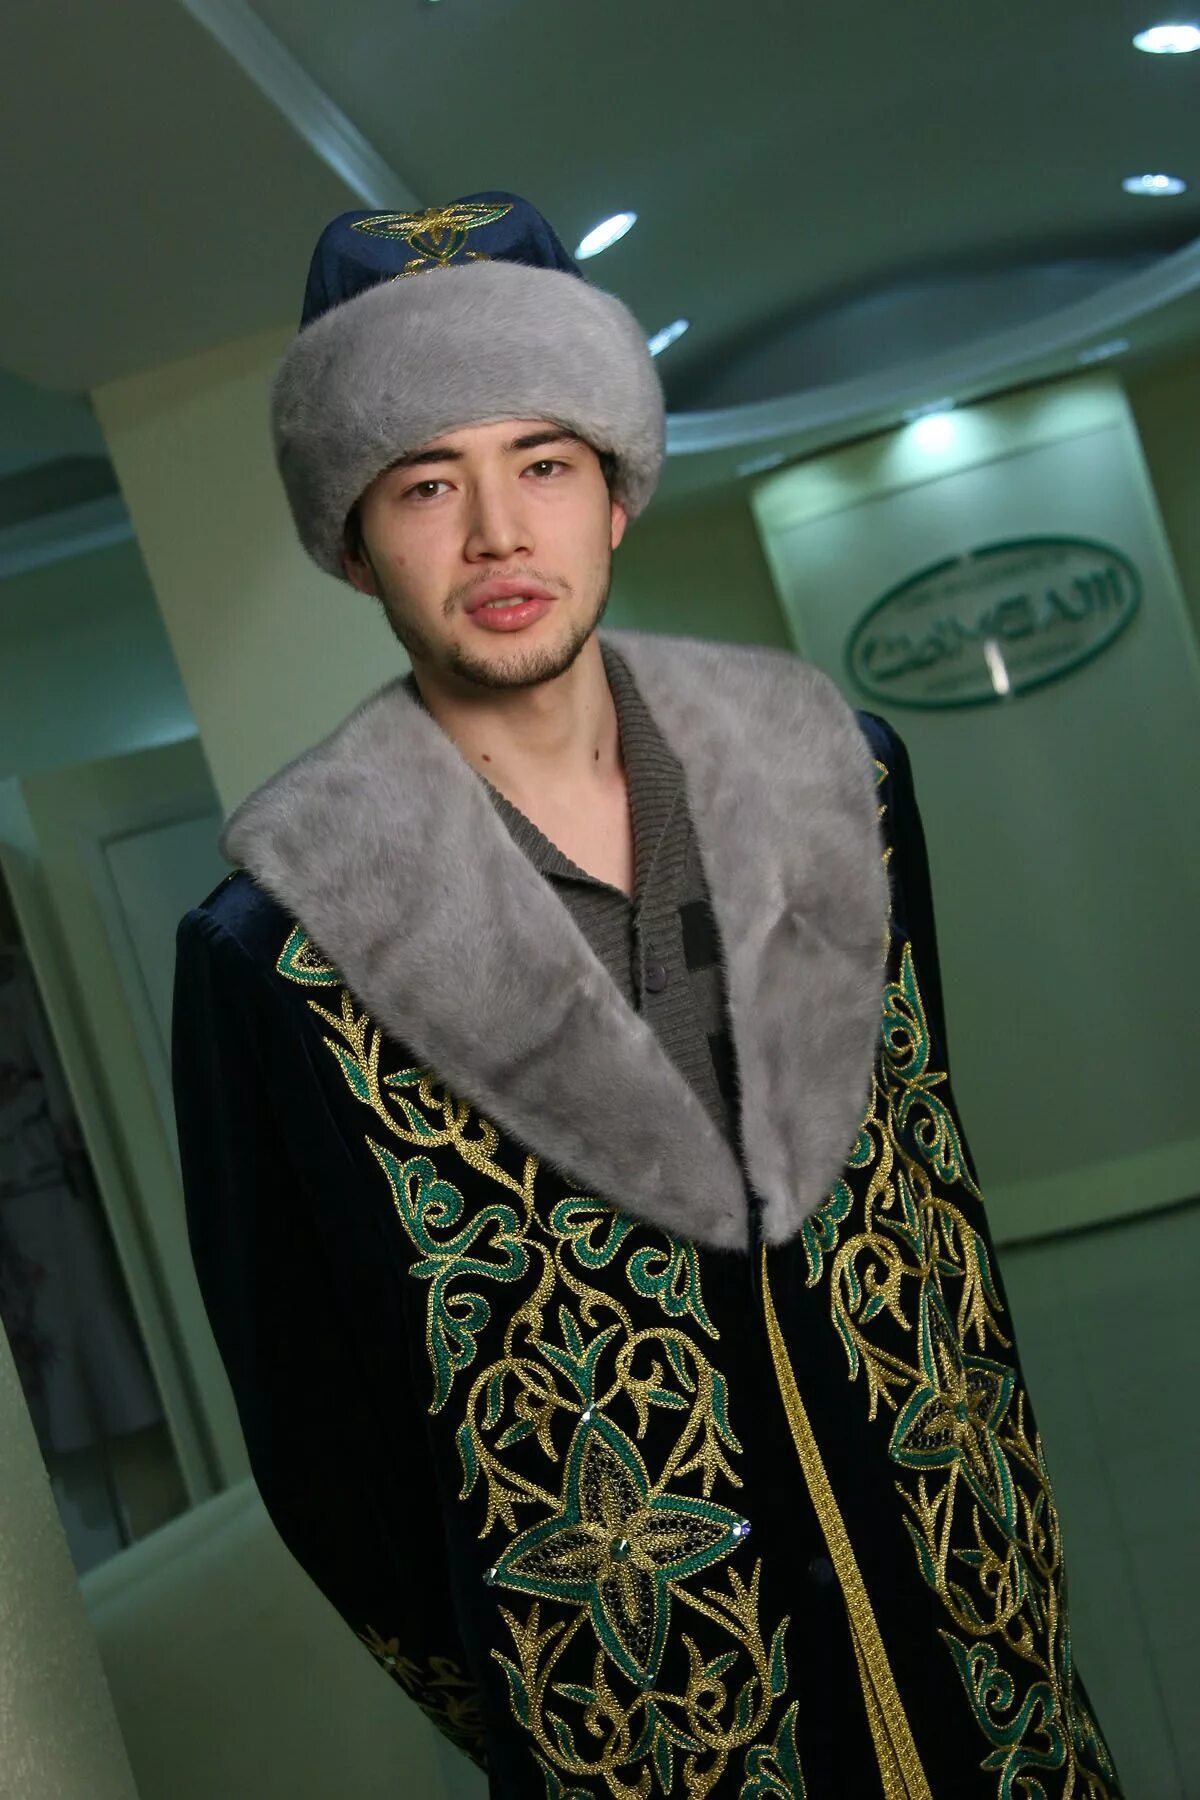 Казах man. Казахская одежда мужская. Казахская мода мужская. Казахи мужики.